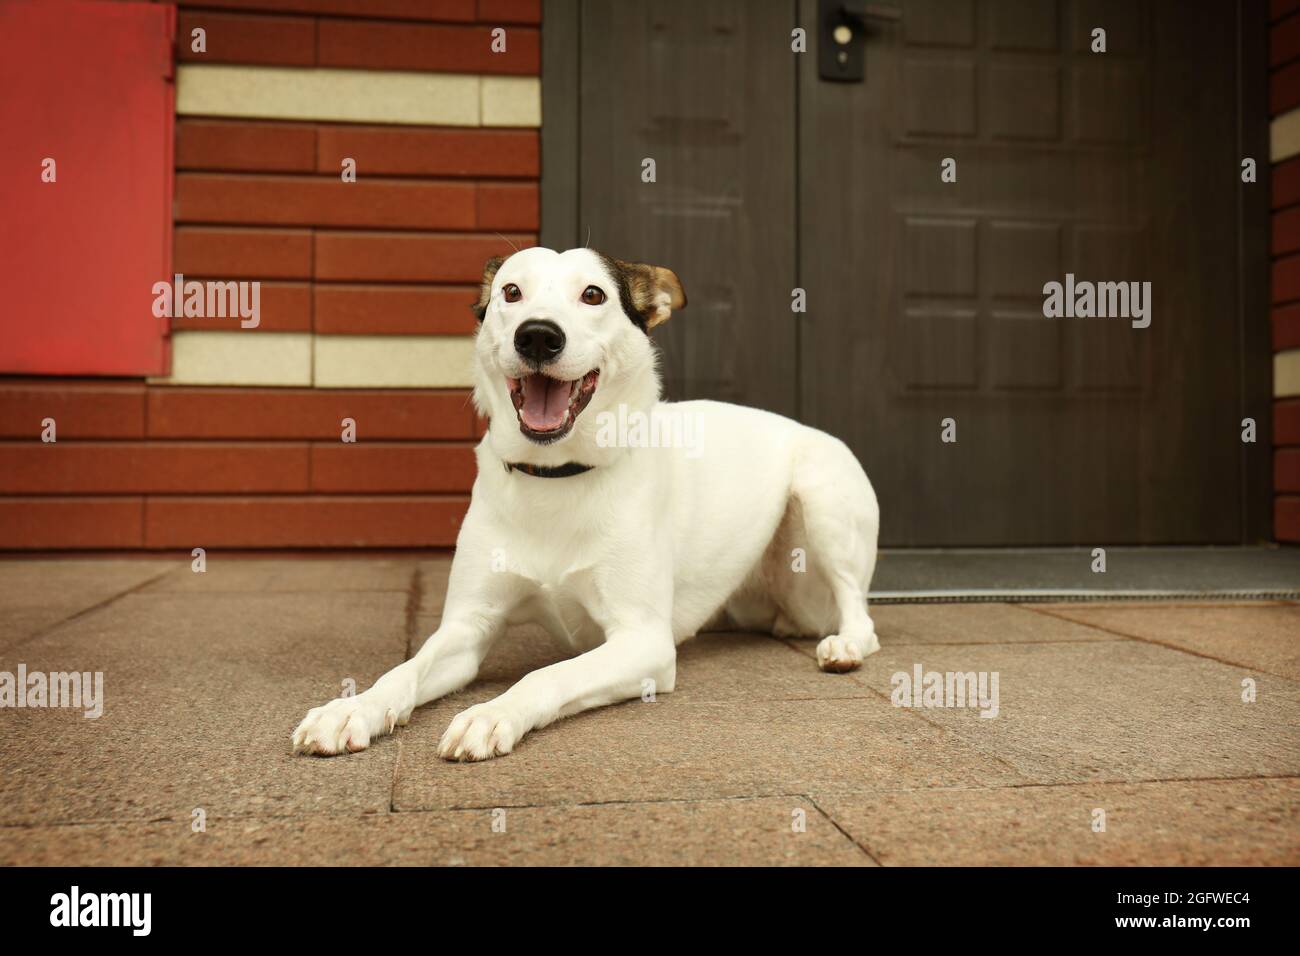 Andalusische ratonero Hund im Freien in der Nähe der Tür Stockfotografie -  Alamy